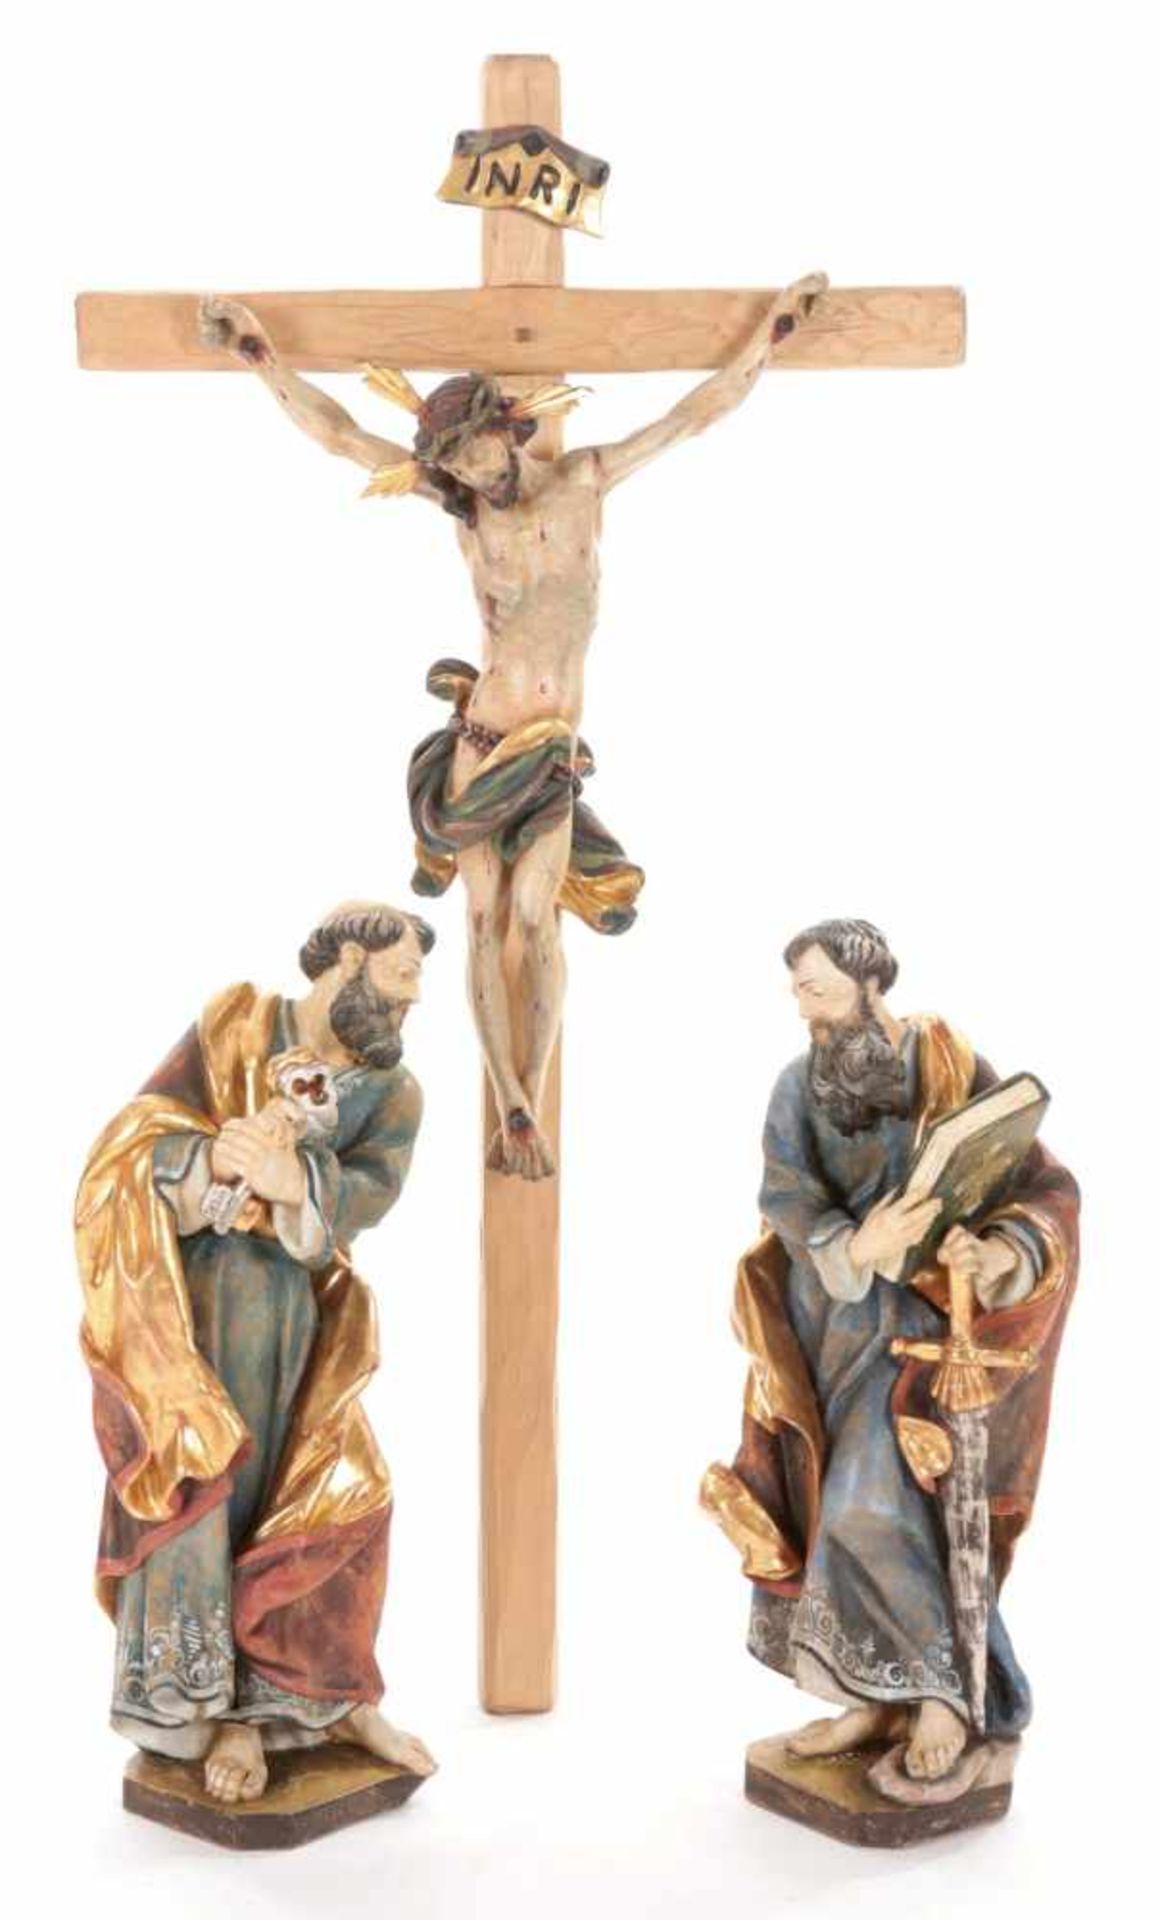 Kruzifix m. 2 ApostelfigurenHolz, Deutschland, 20.Jh. 3 vollrund geschnittenen Figuren im Stil des